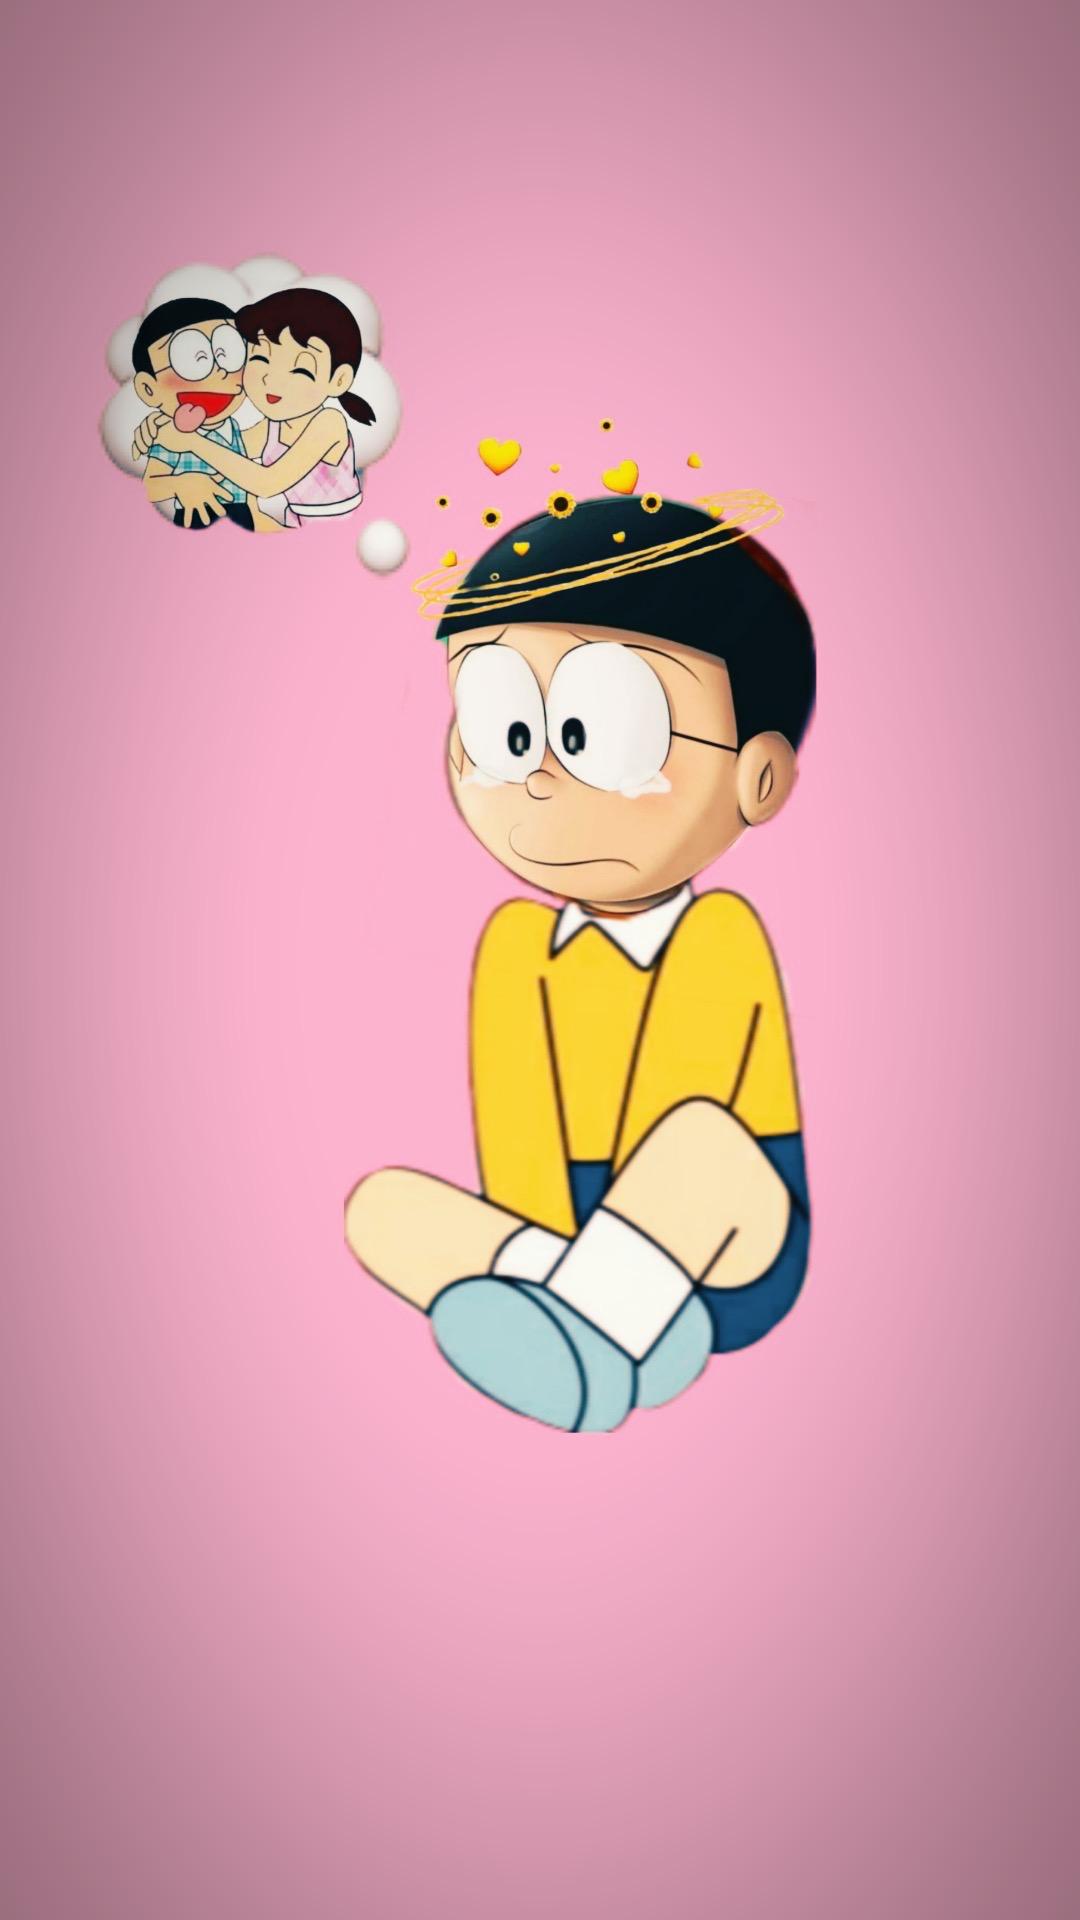 Nobita Wallpapers - Top 30 Best Nobita Wallpapers Download